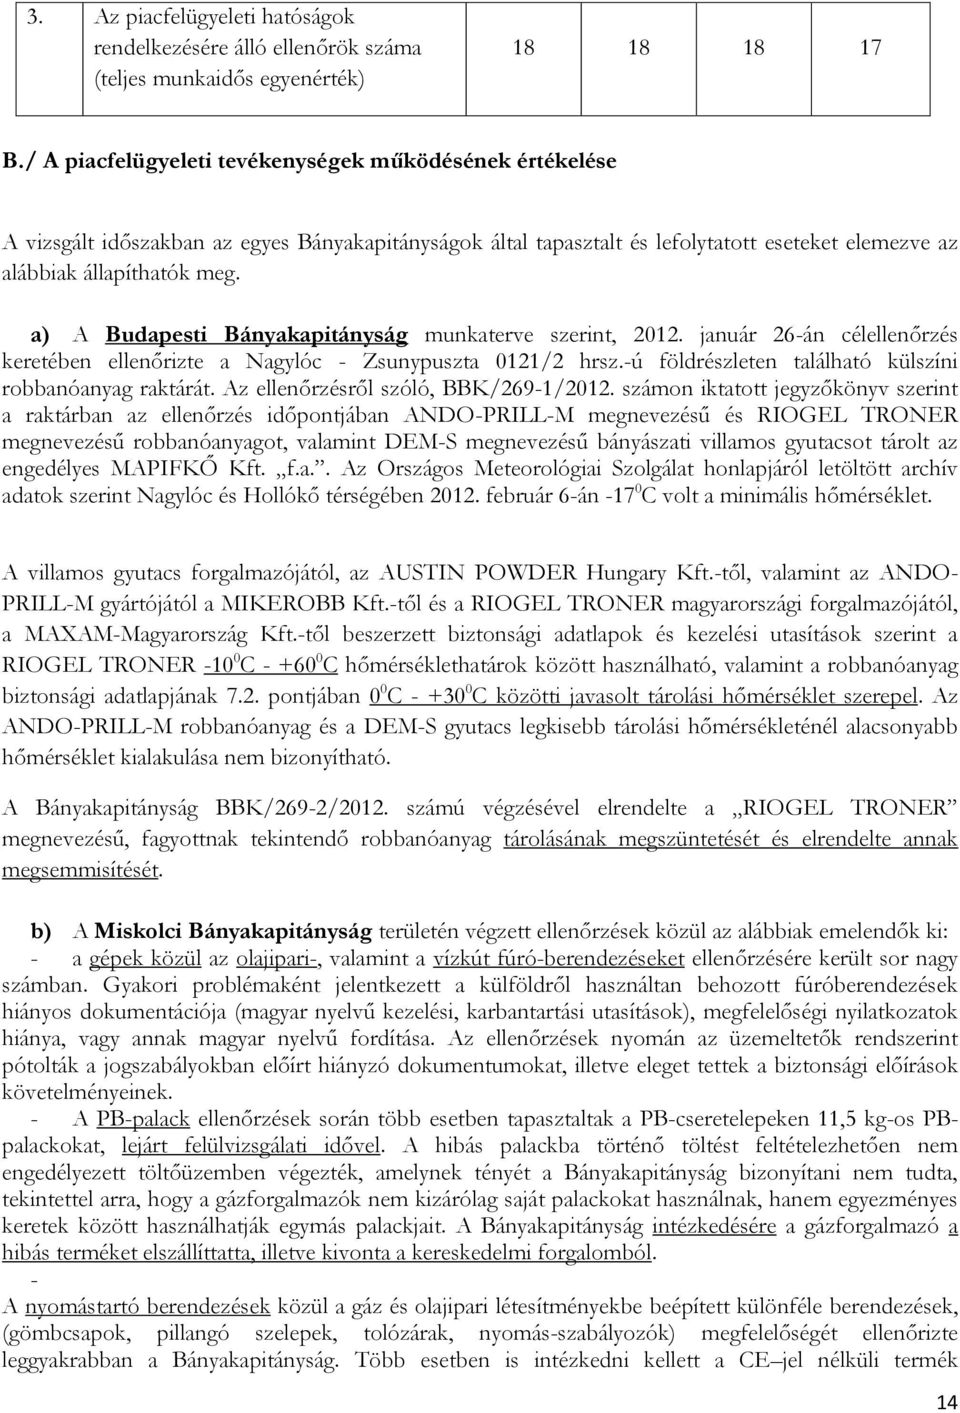 a) A Budapesti Bányakapitányság munkaterve szerint, 2012. január 26-án célellenőrzés keretében ellenőrizte a Nagylóc - Zsunypuszta 0121/2 hrsz.